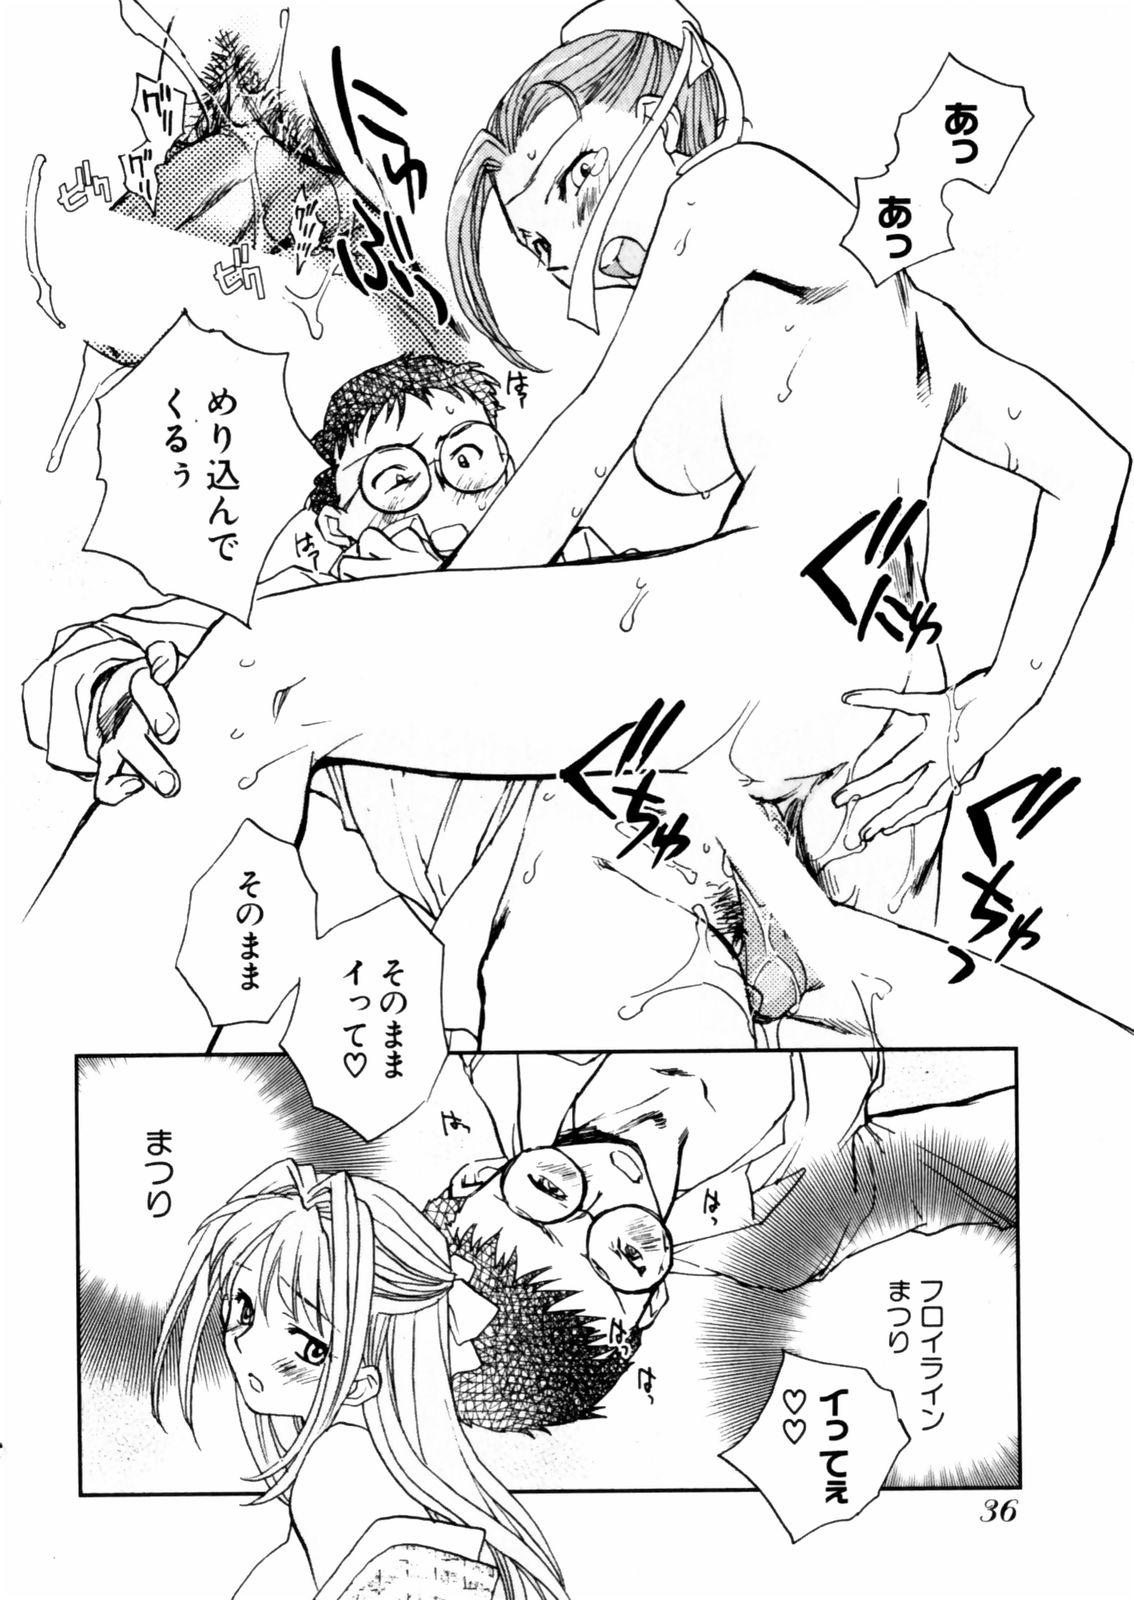 [Okano Ahiru] Hanasake ! Otome Juku (Otome Private Tutoring School) Vol.2 37